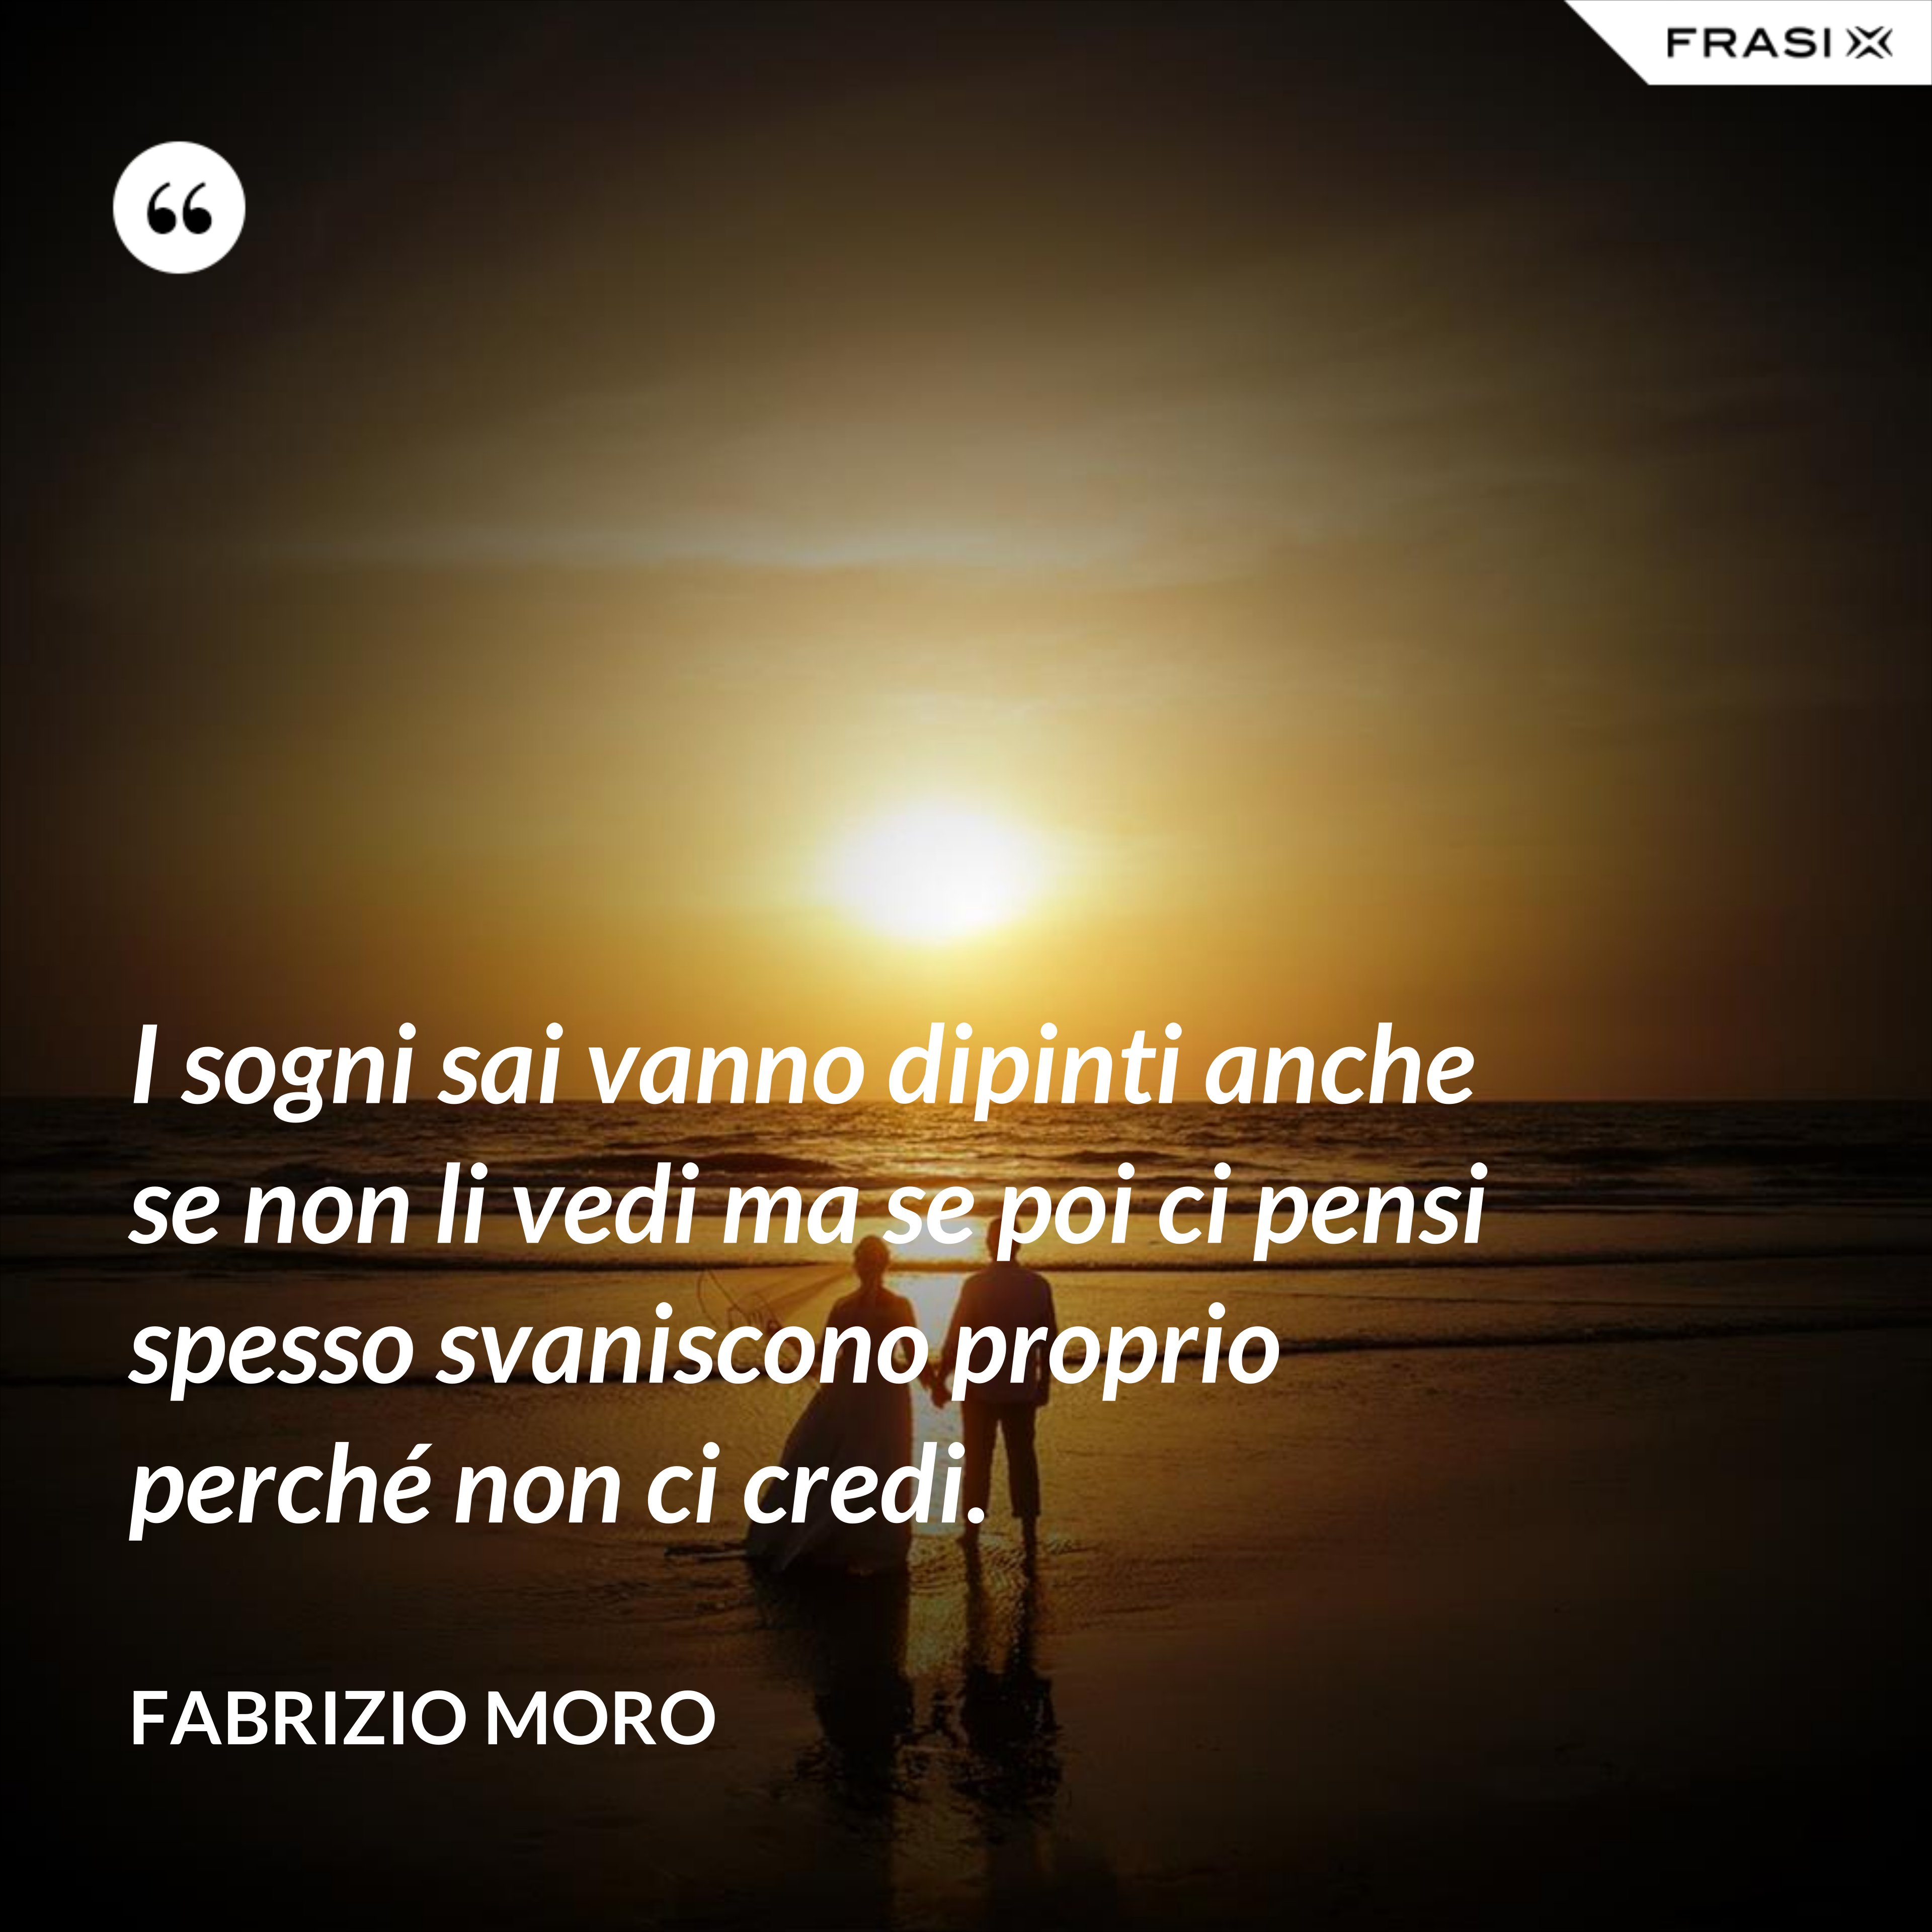 I sogni sai vanno dipinti anche se non li vedi ma se poi ci pensi spesso svaniscono proprio perché non ci credi. - Fabrizio Moro